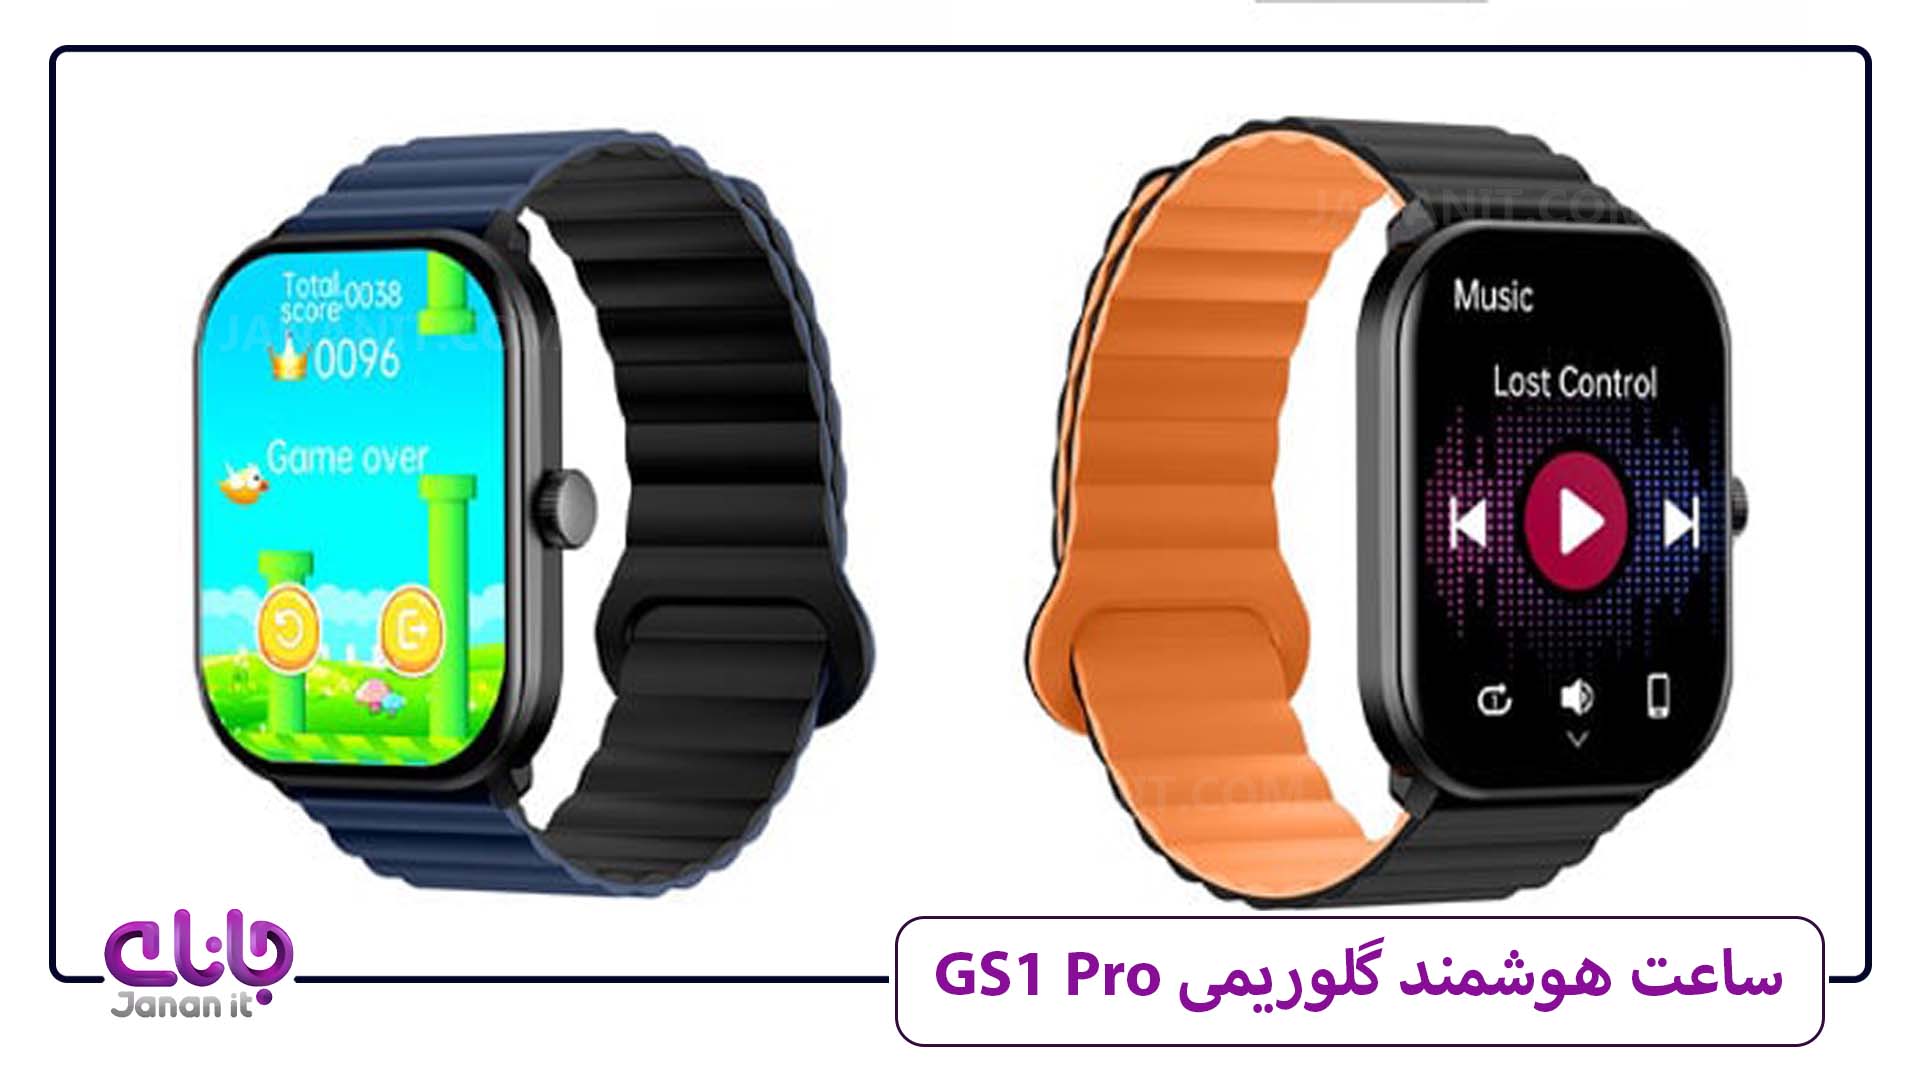  ساعت هوشمند گلوریمی GS1 Pro